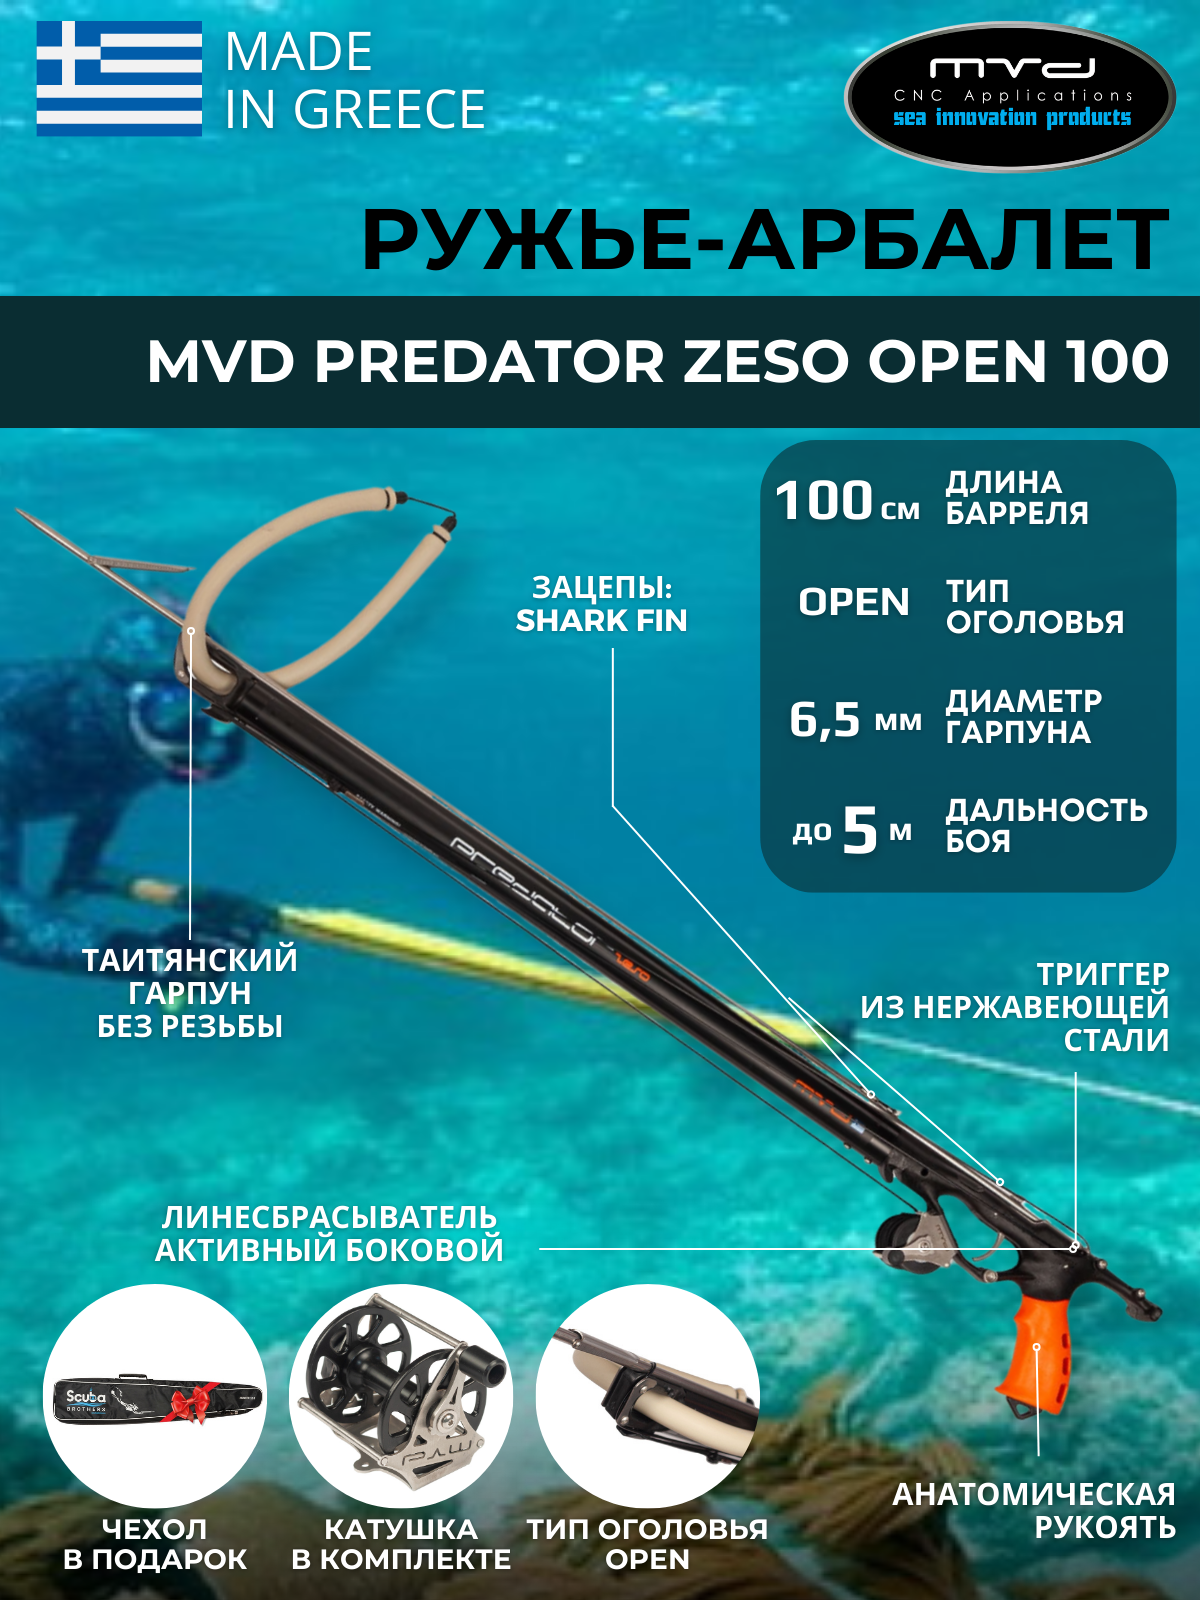 Ружье-арбалет MVD PREDATOR ZESO OPEN 100 см, с катушкой, полный комплект